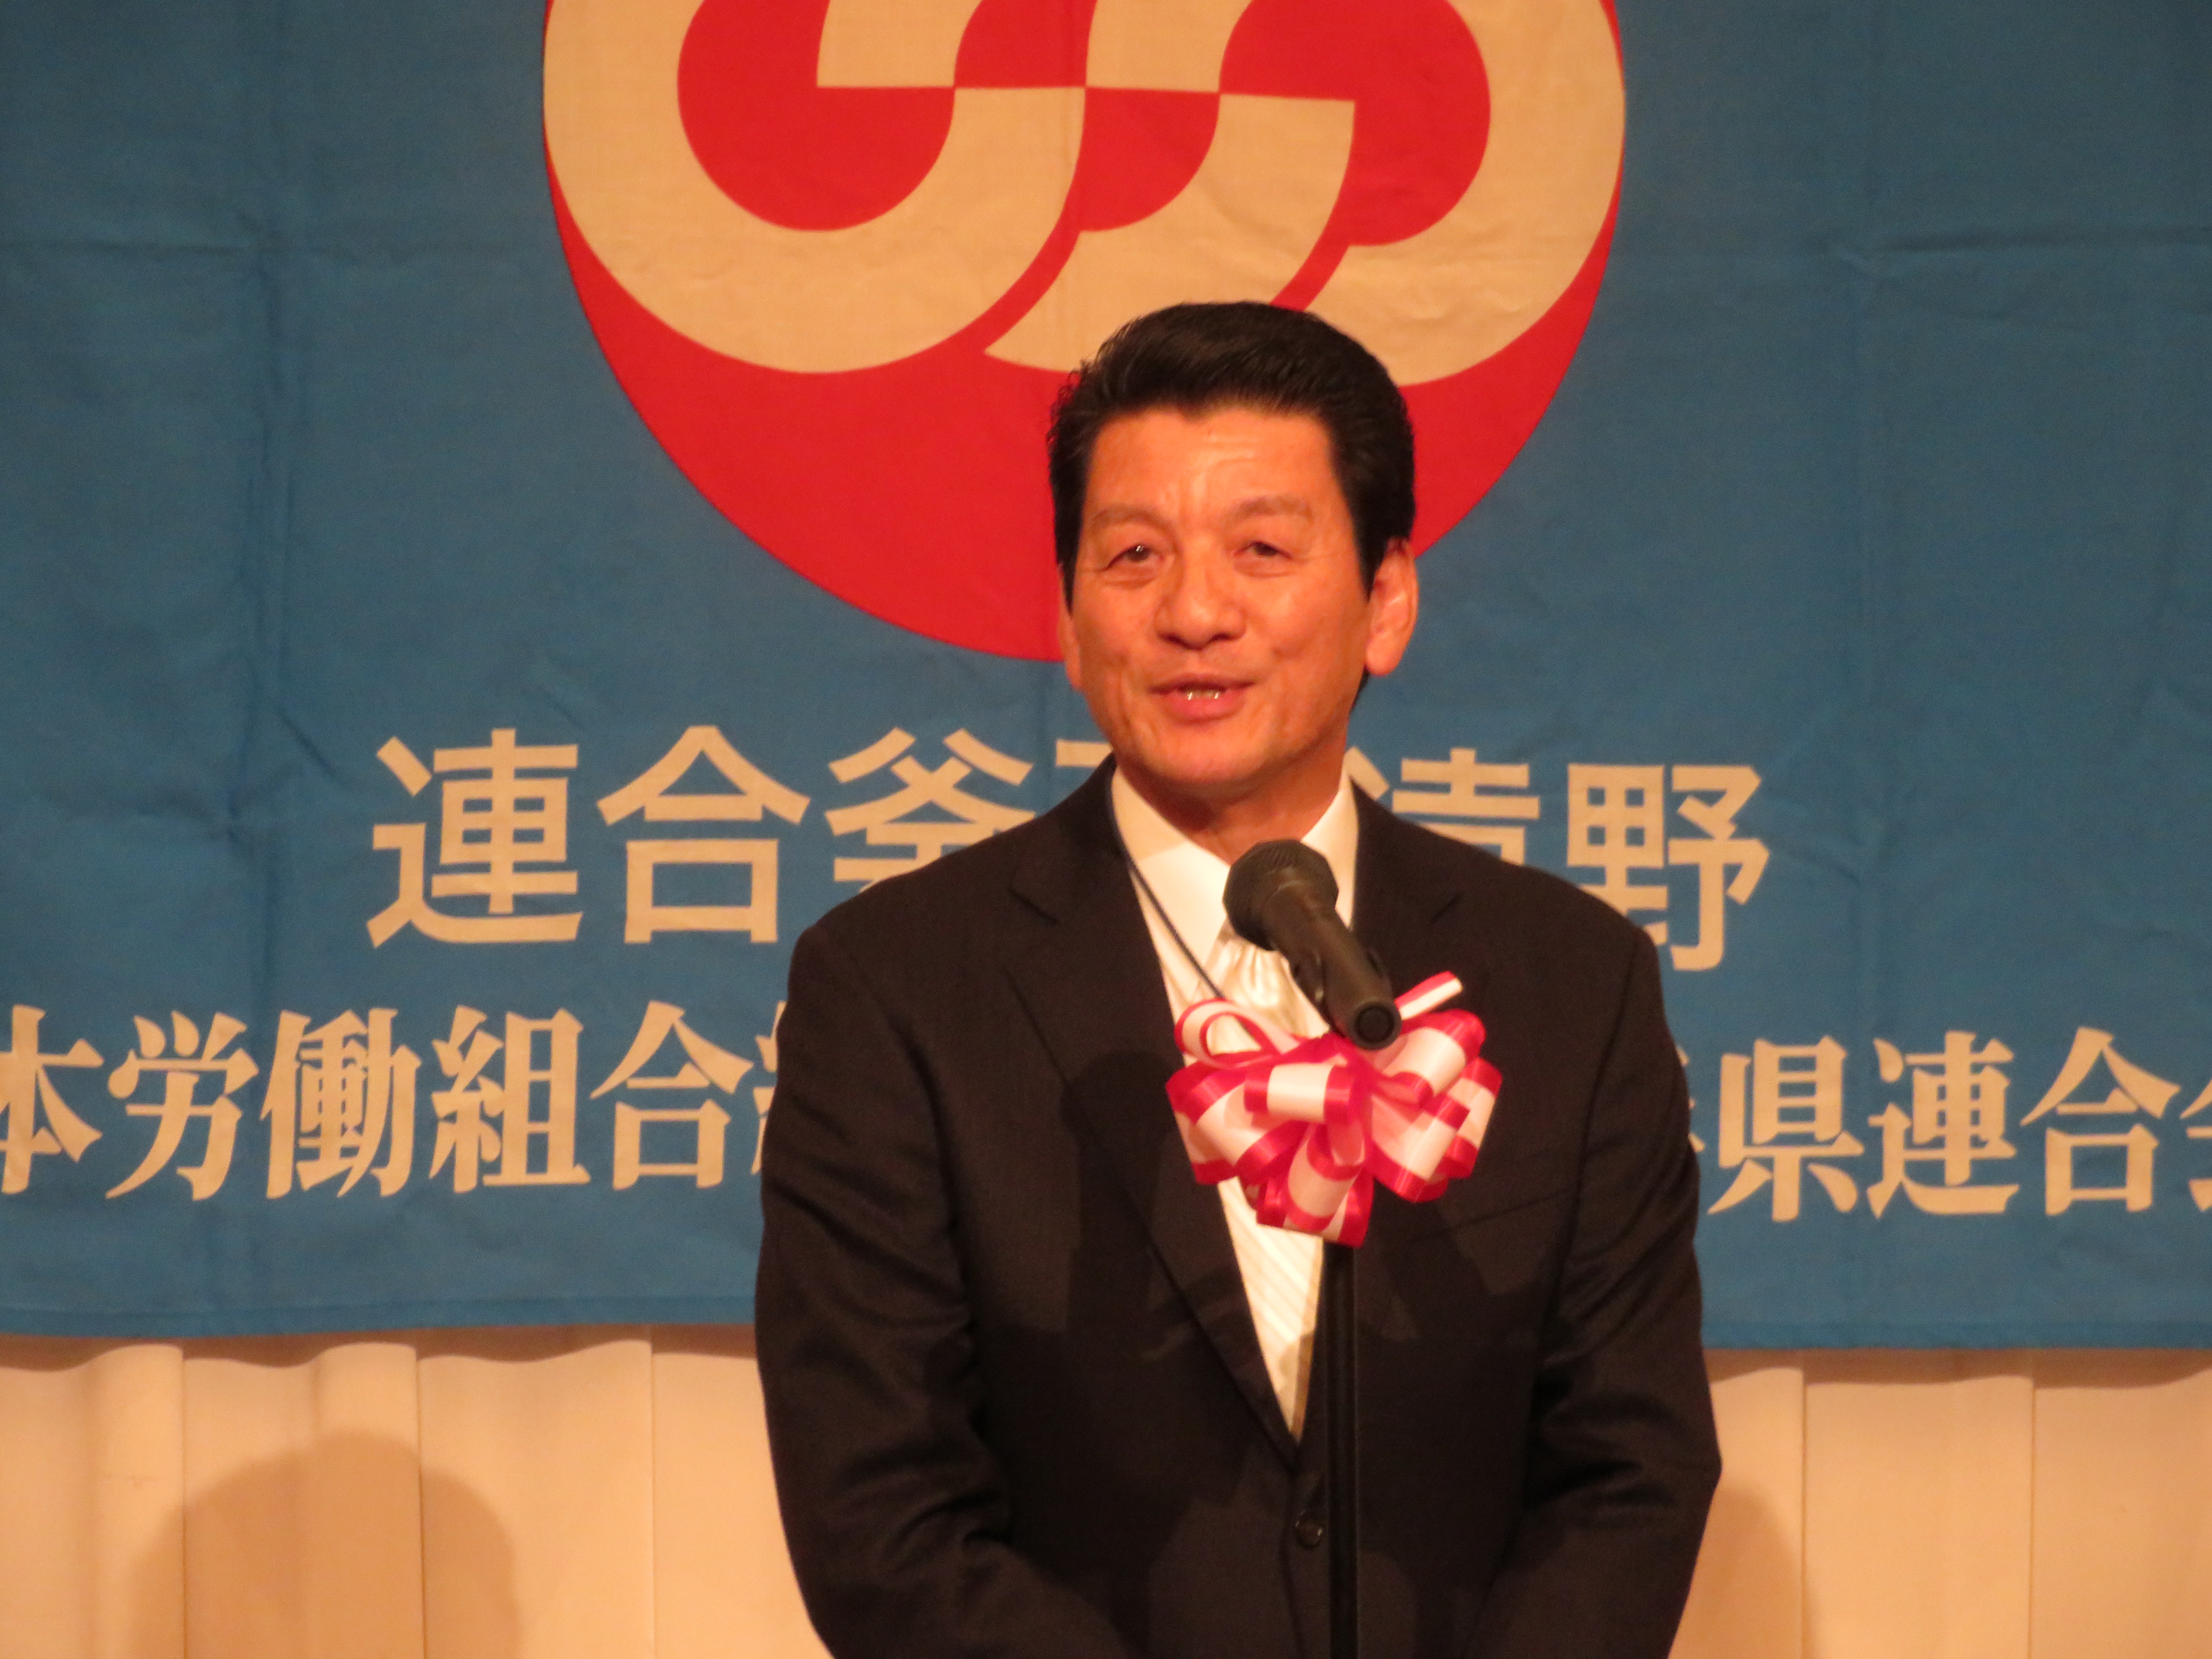 受賞者を代表して元釜石地区協議長・佐々木雄治さんから謝辞をいただく